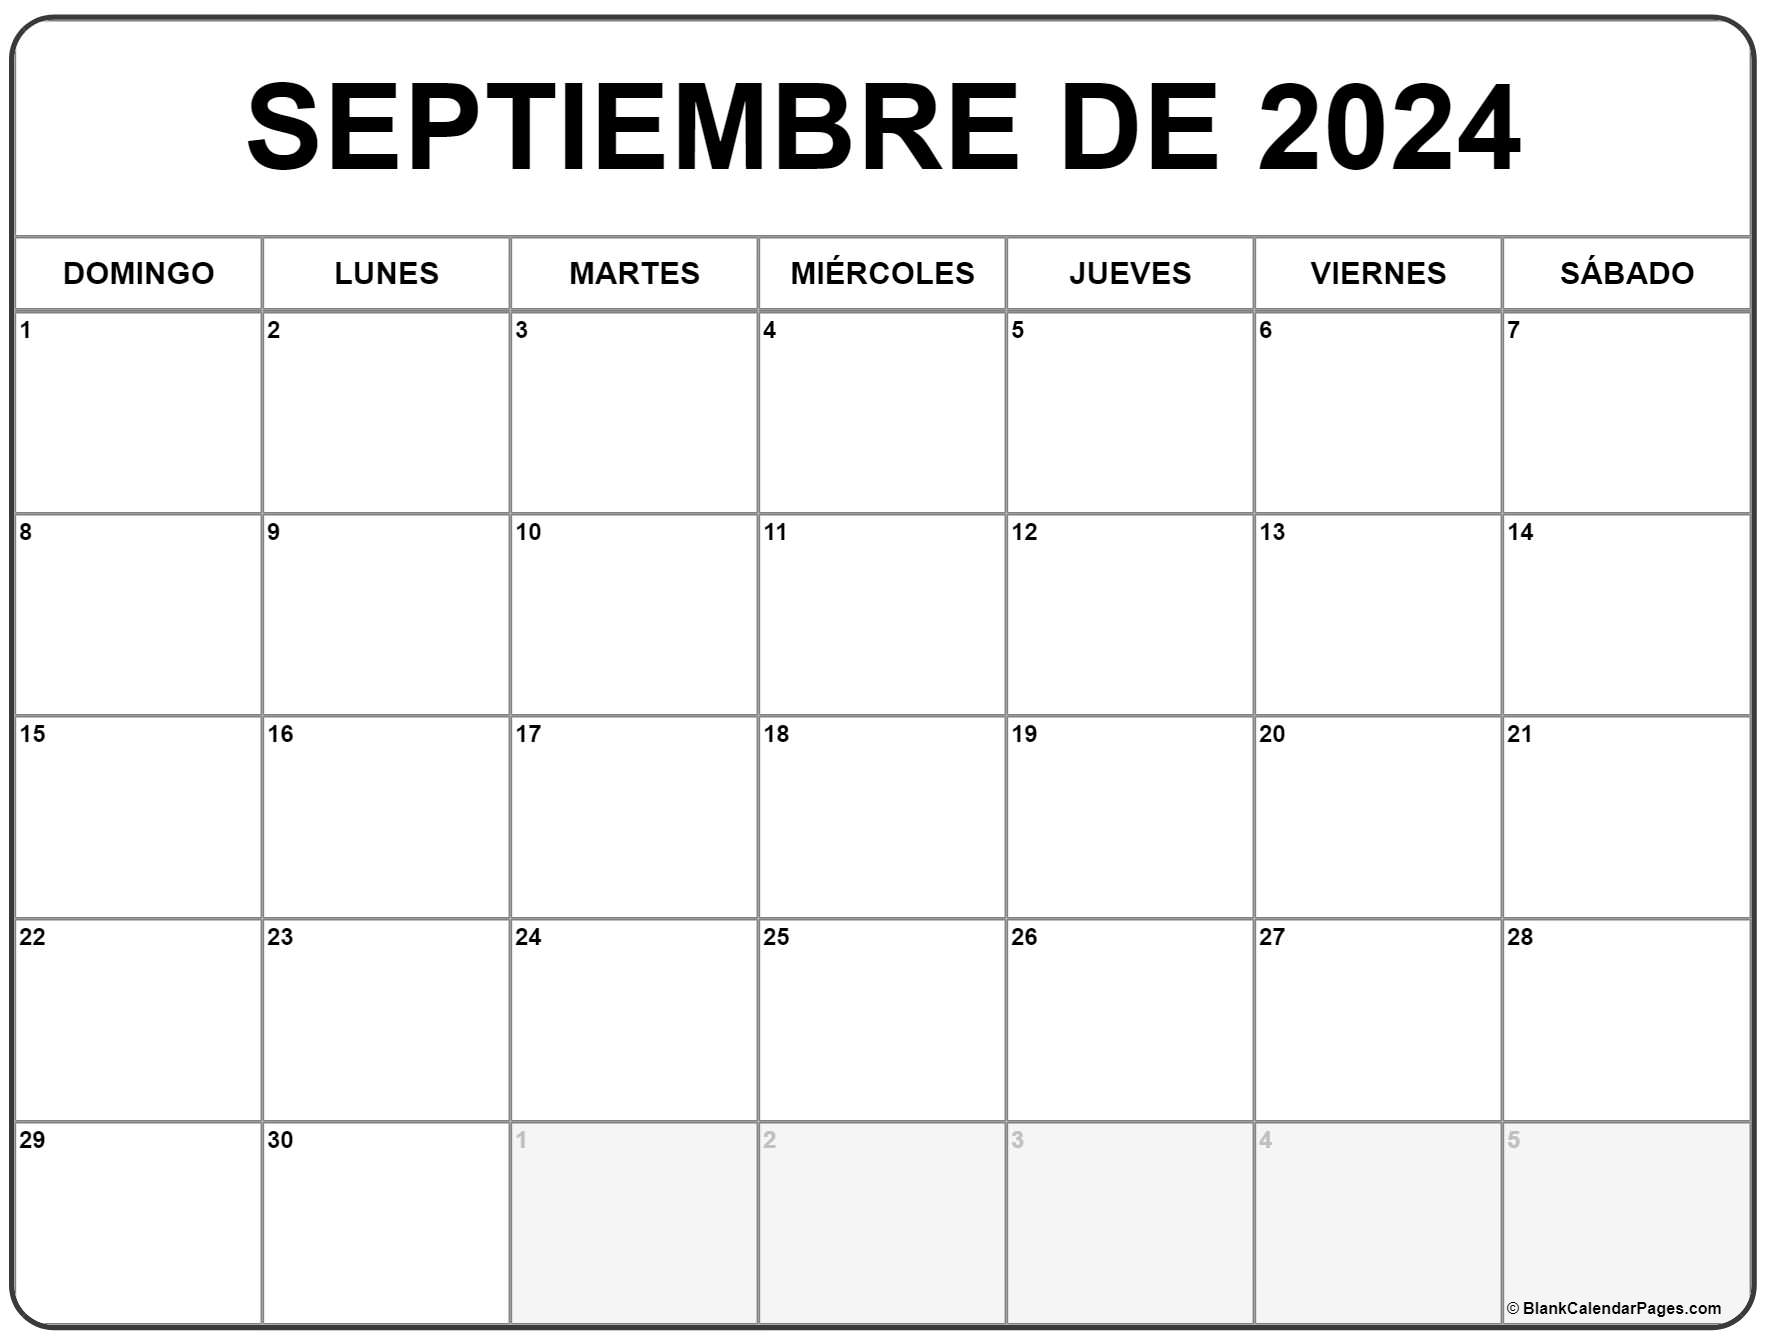 septiembre de 2024 calendario gratis